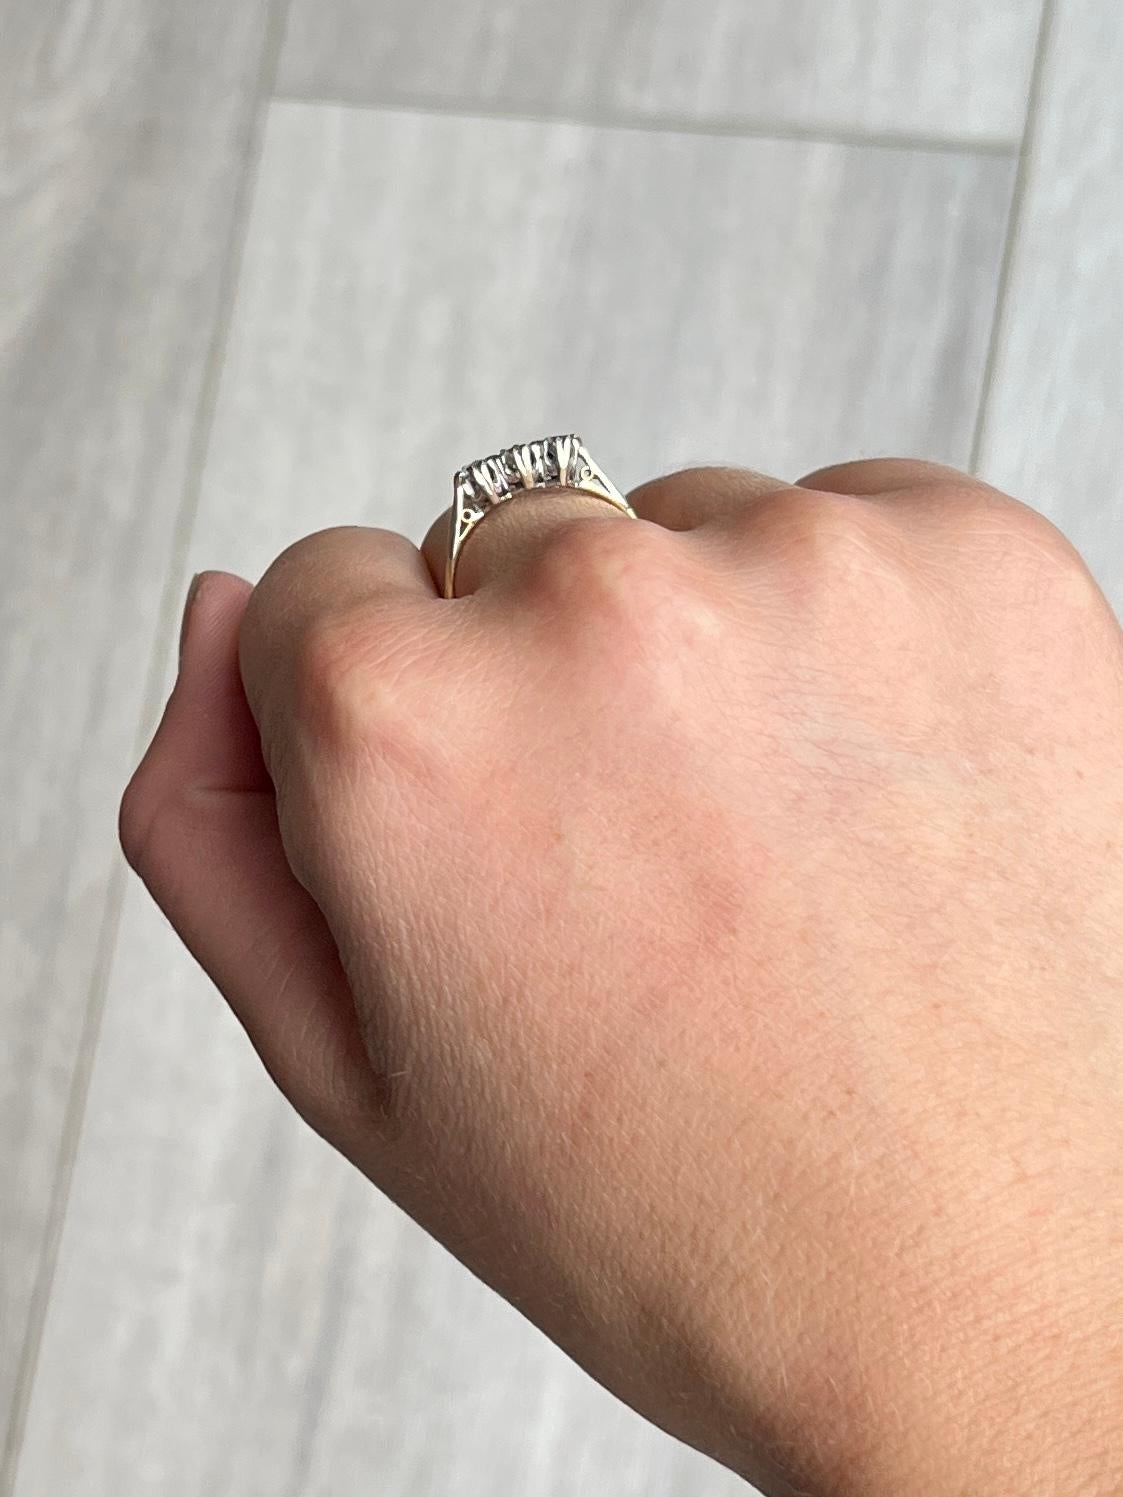 Ein prächtiger dreisteiniger Ring im Vintage-Stil, besetzt mit schönen weißen Diamanten. Der zentrale Diamant misst 25 Punkte und die beiden flankierenden Steine jeweils 20 Punkte. Das Gesamtkaratgewicht dieses Rings beträgt 65 Punkte. Die Diamanten